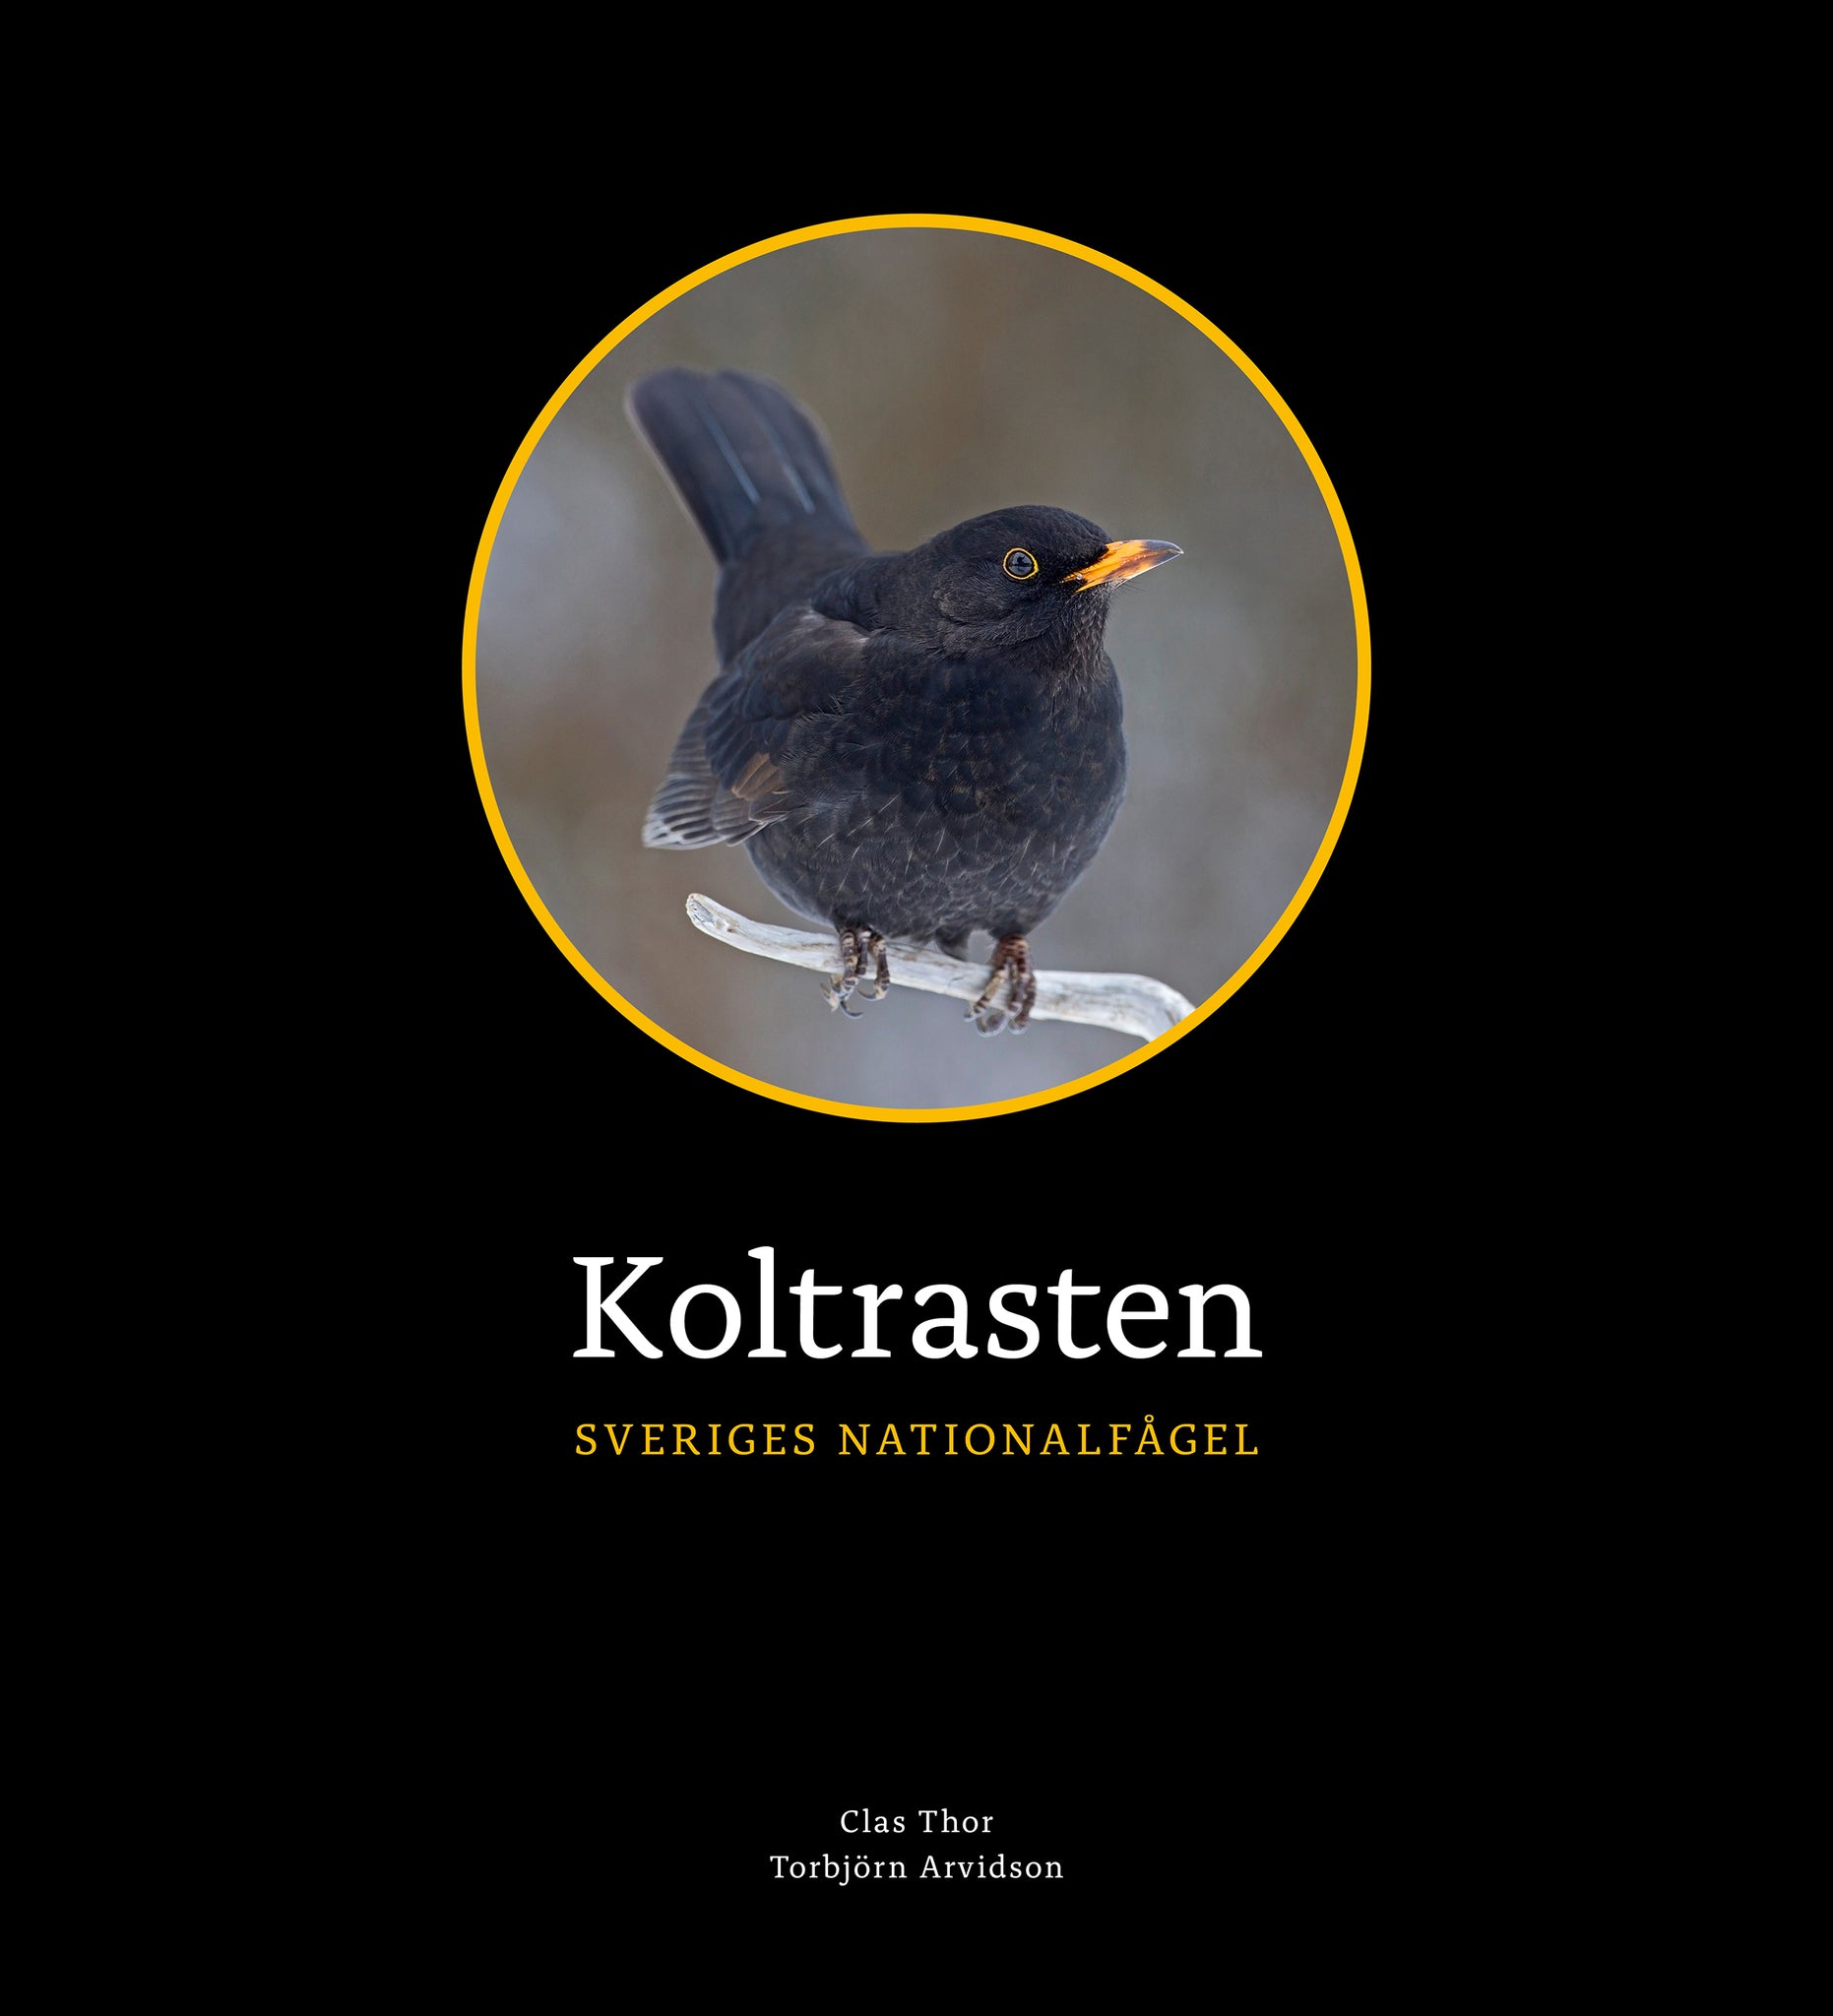 Koltrasten – Sveriges nationalfågel (Thor, 2021)